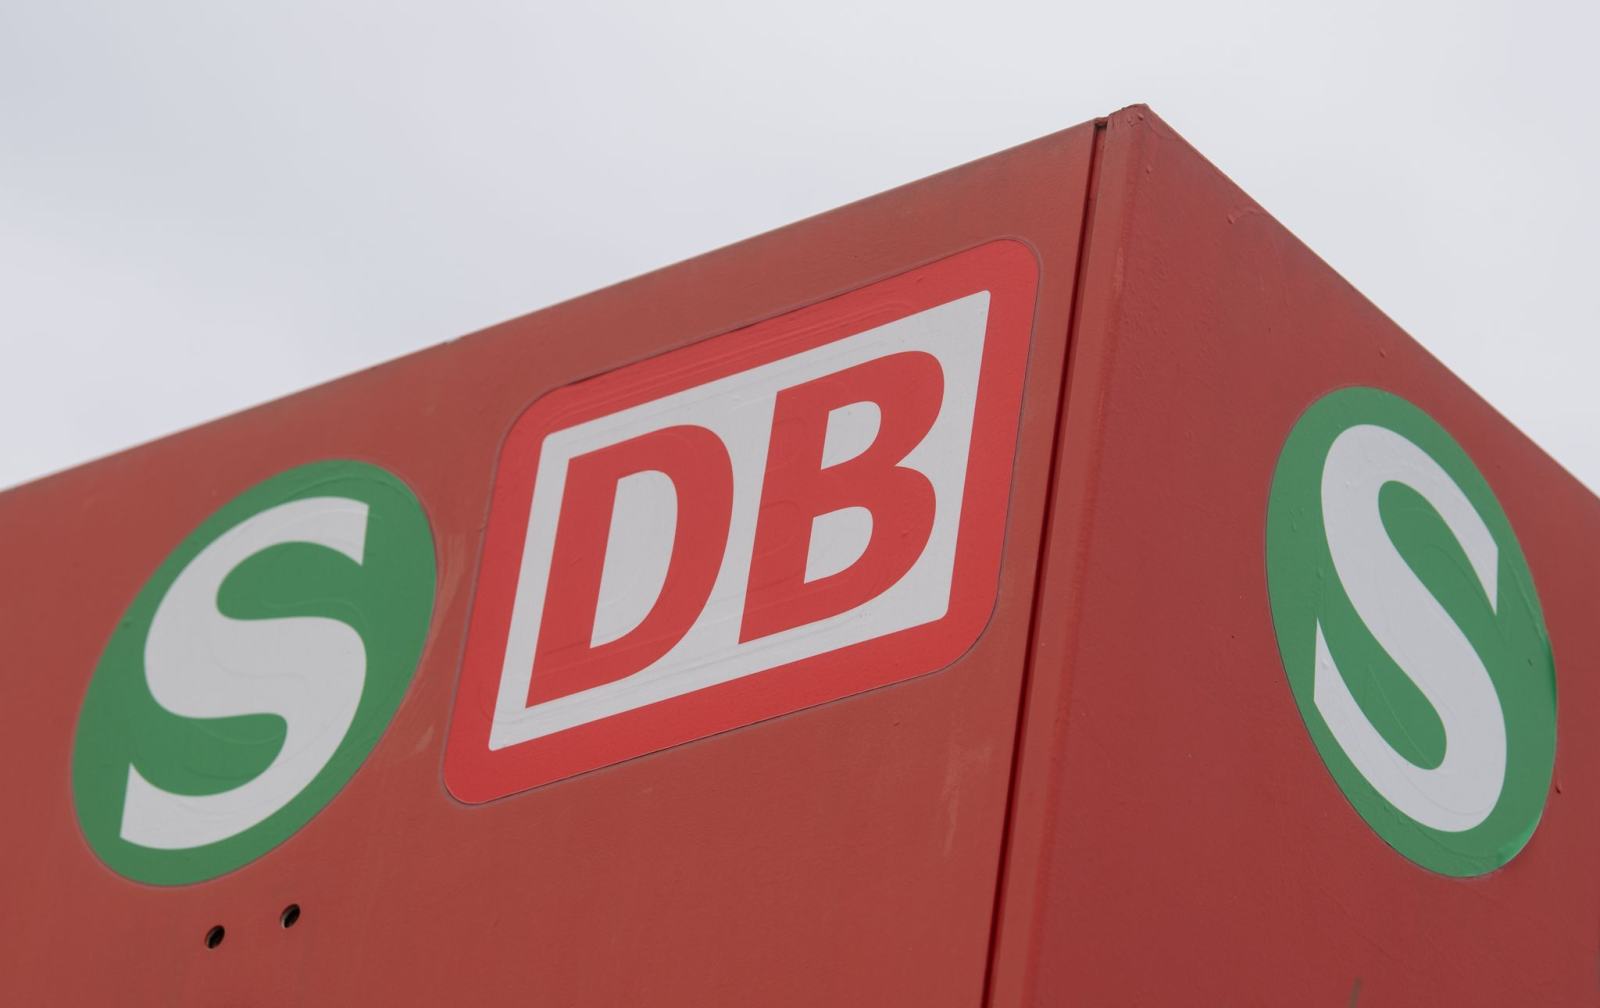 Ein S-Bahn-Logo und das Logo der Deutschen Bahn sind an einem Haltepunkt zu sehen.